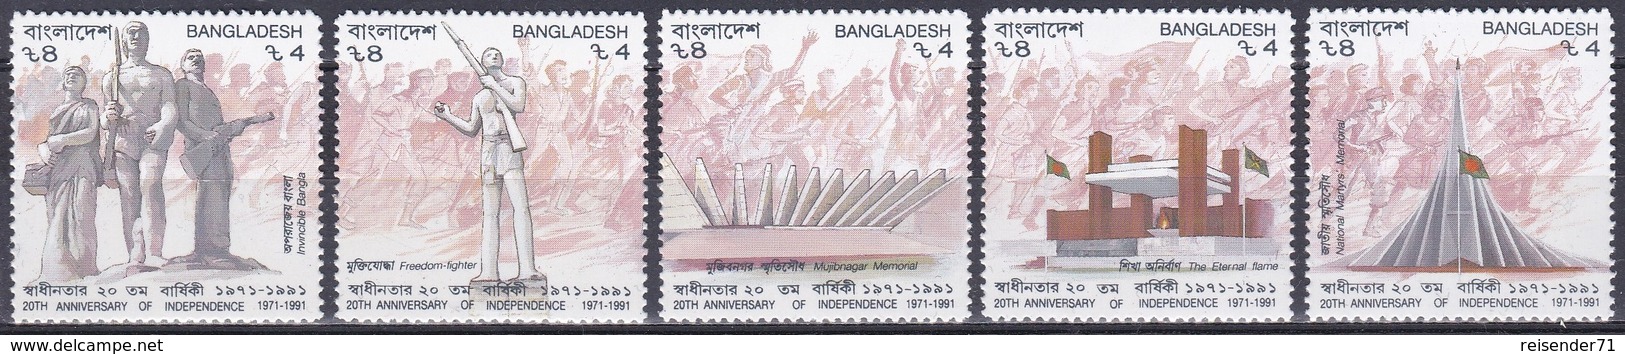 Bangladesch Bangladesh 1991 Geschichte History Unabhängigkeit Independence Denkmäler Memorials, Mi. 358-2 ** - Bangladesch